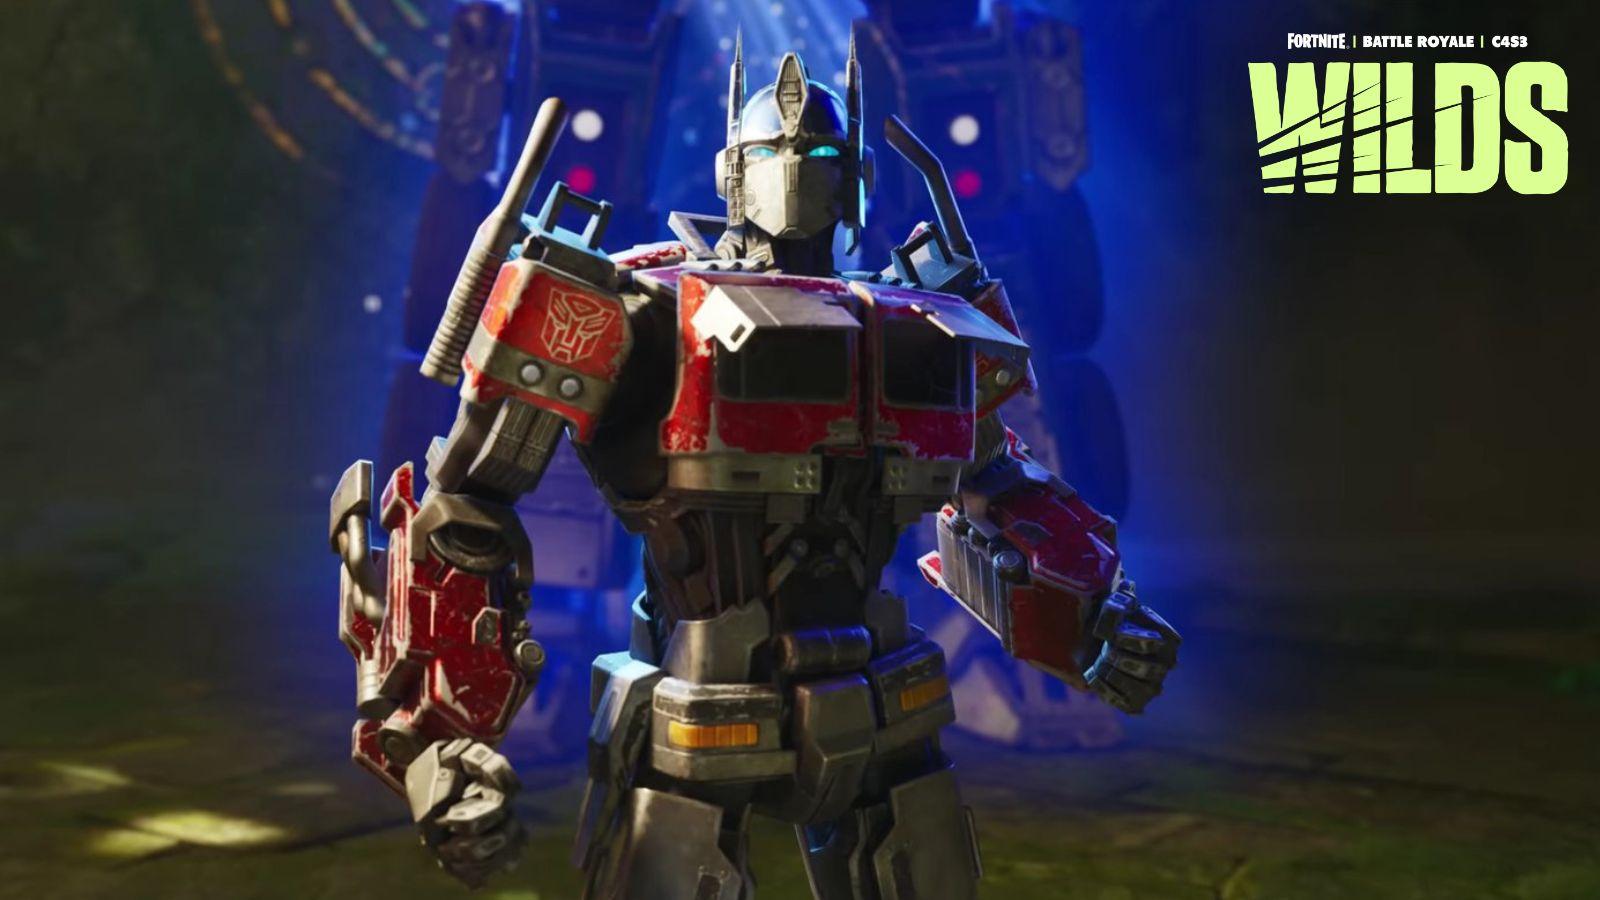 hardMOB - Optimus Prime chegará a Fortnite em colaboração especial